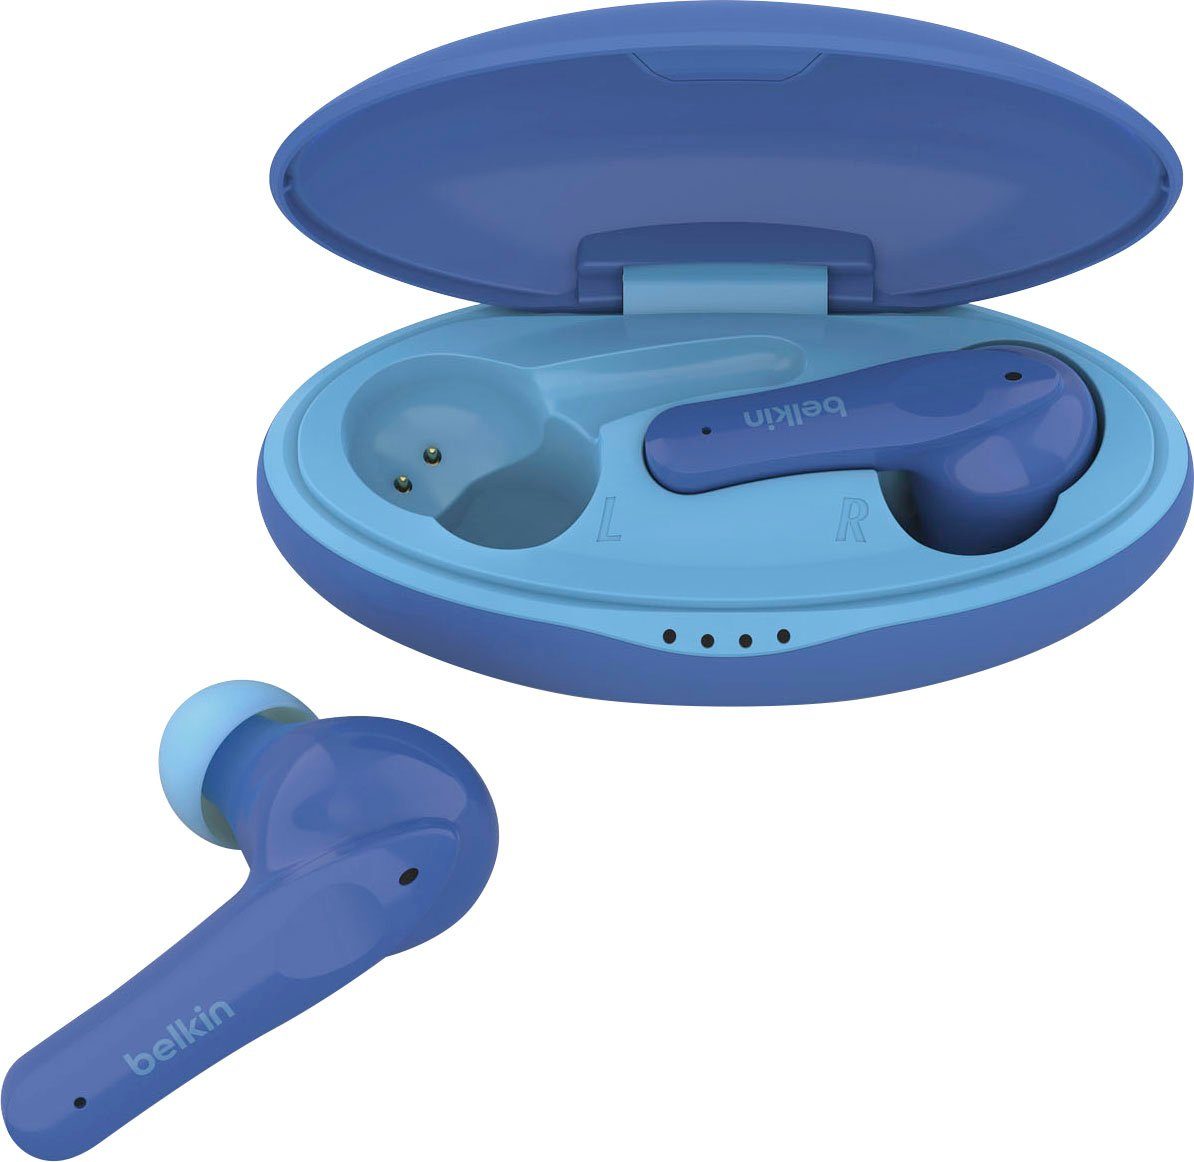 Belkin SOUNDFORM NANO - Kinder In-Ear-Kopfhörer wireless Kopfhörer (auf 85 dB begrenzt; am Kopfhörer) blau